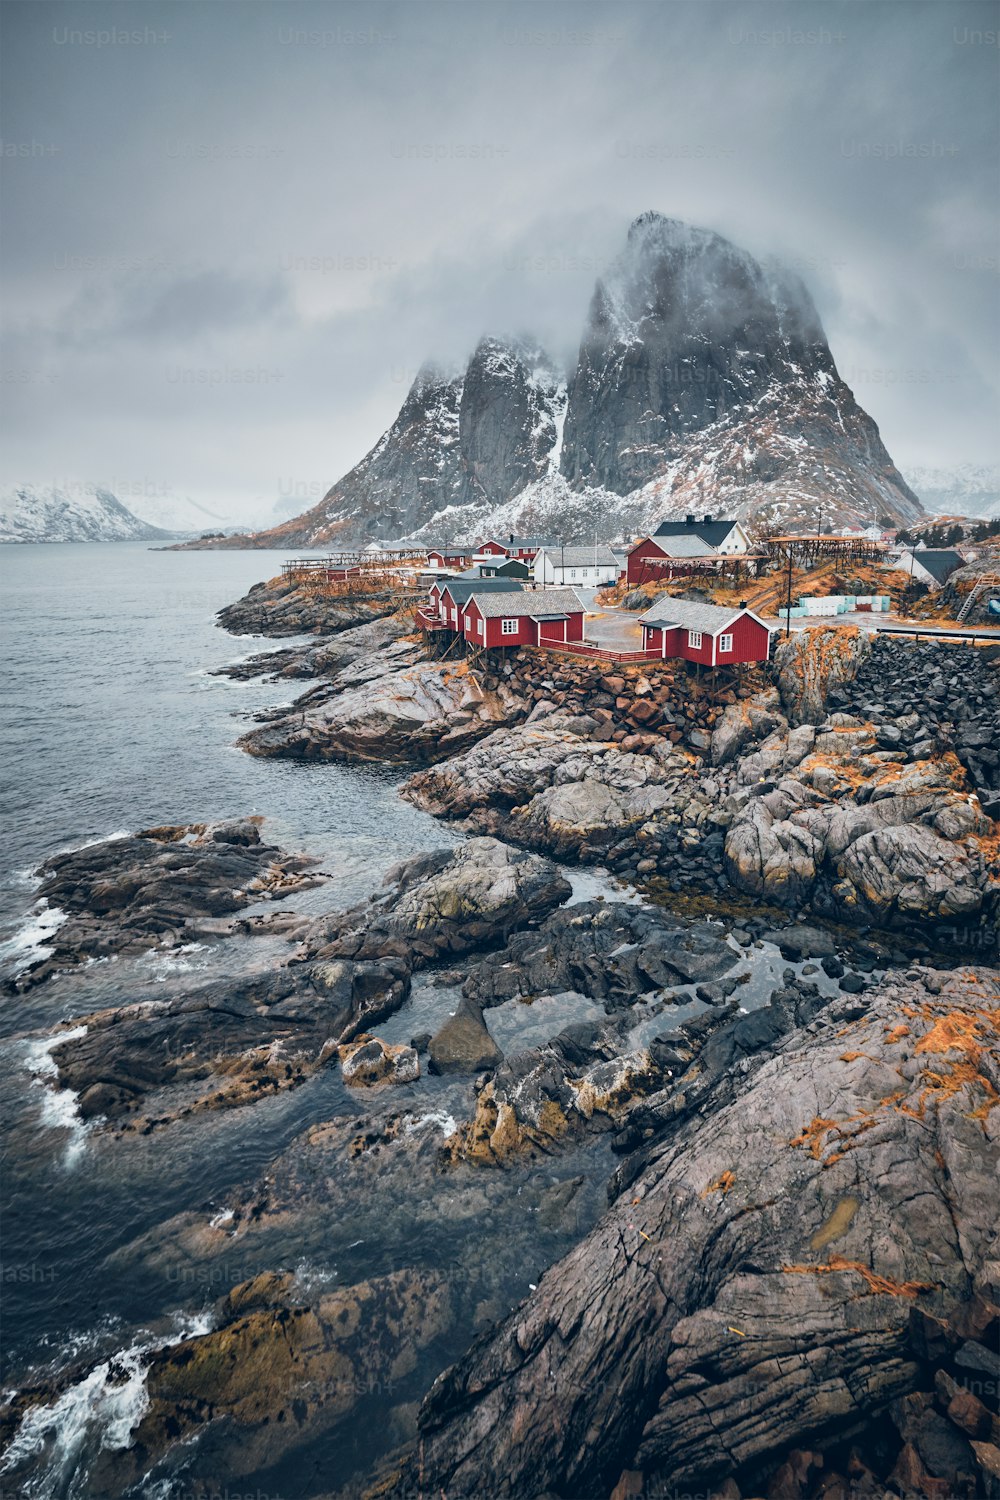 Famosa atração turística Hamnoy vila de pescadores em Lofoten Islands, Noruega com casas de rorbu vermelho. Com neve caindo no inverno